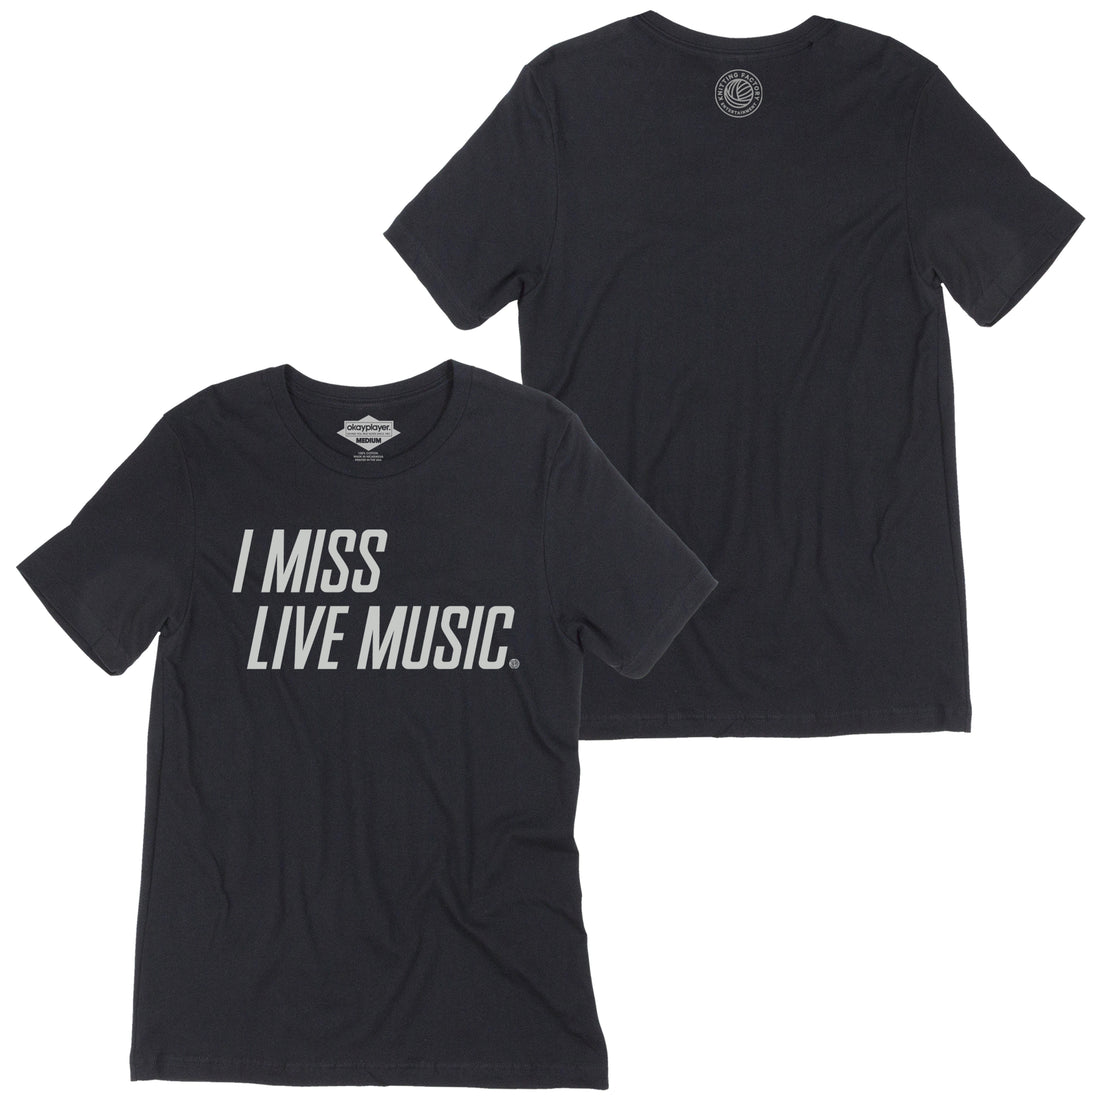 I Miss Live Music. T-Shirt